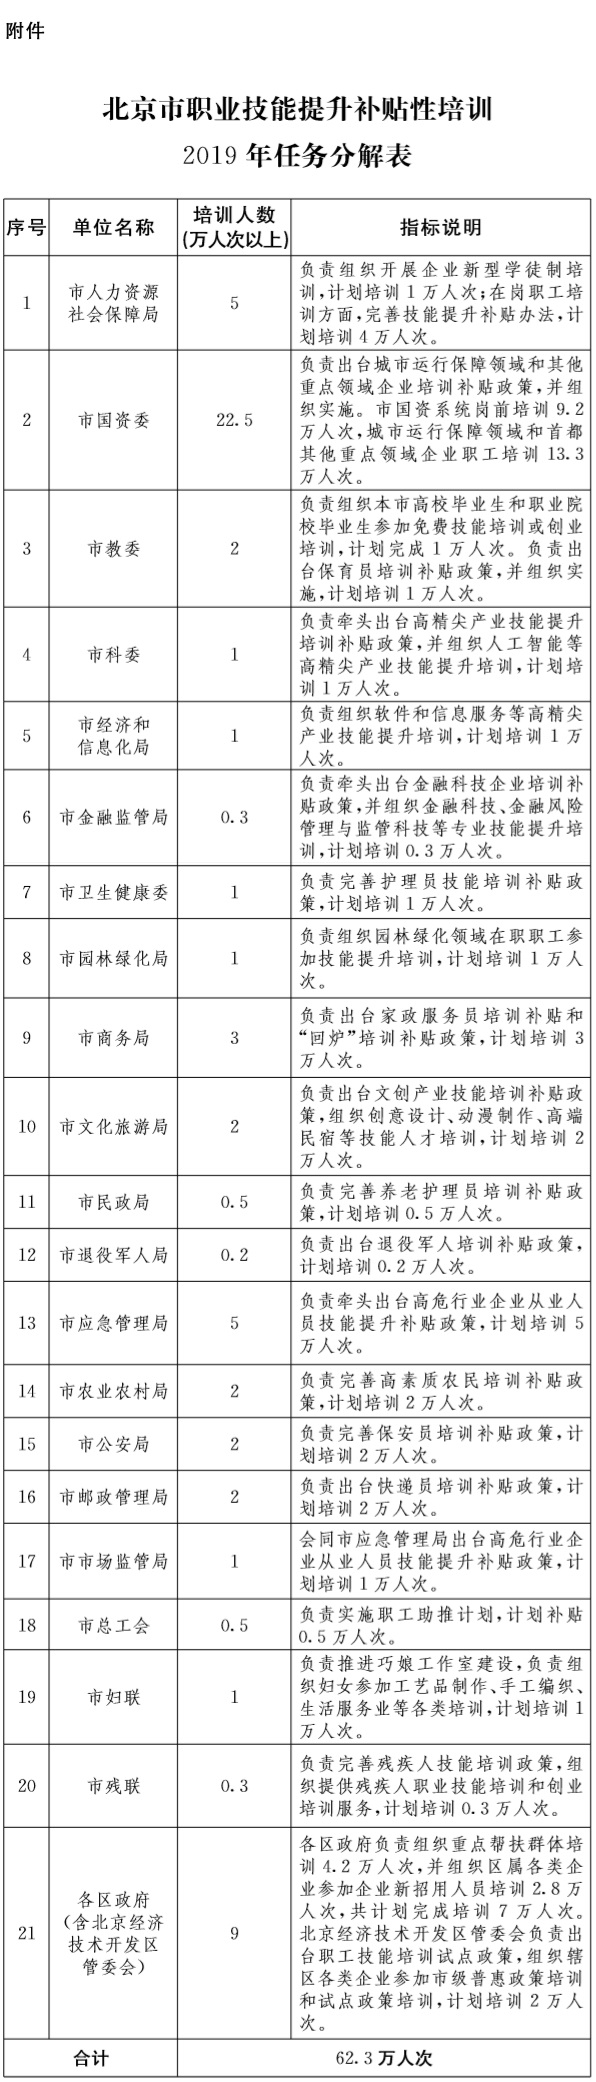 37-附件：北京市职业技能提升补贴性培训2019年任务分解表.jpg